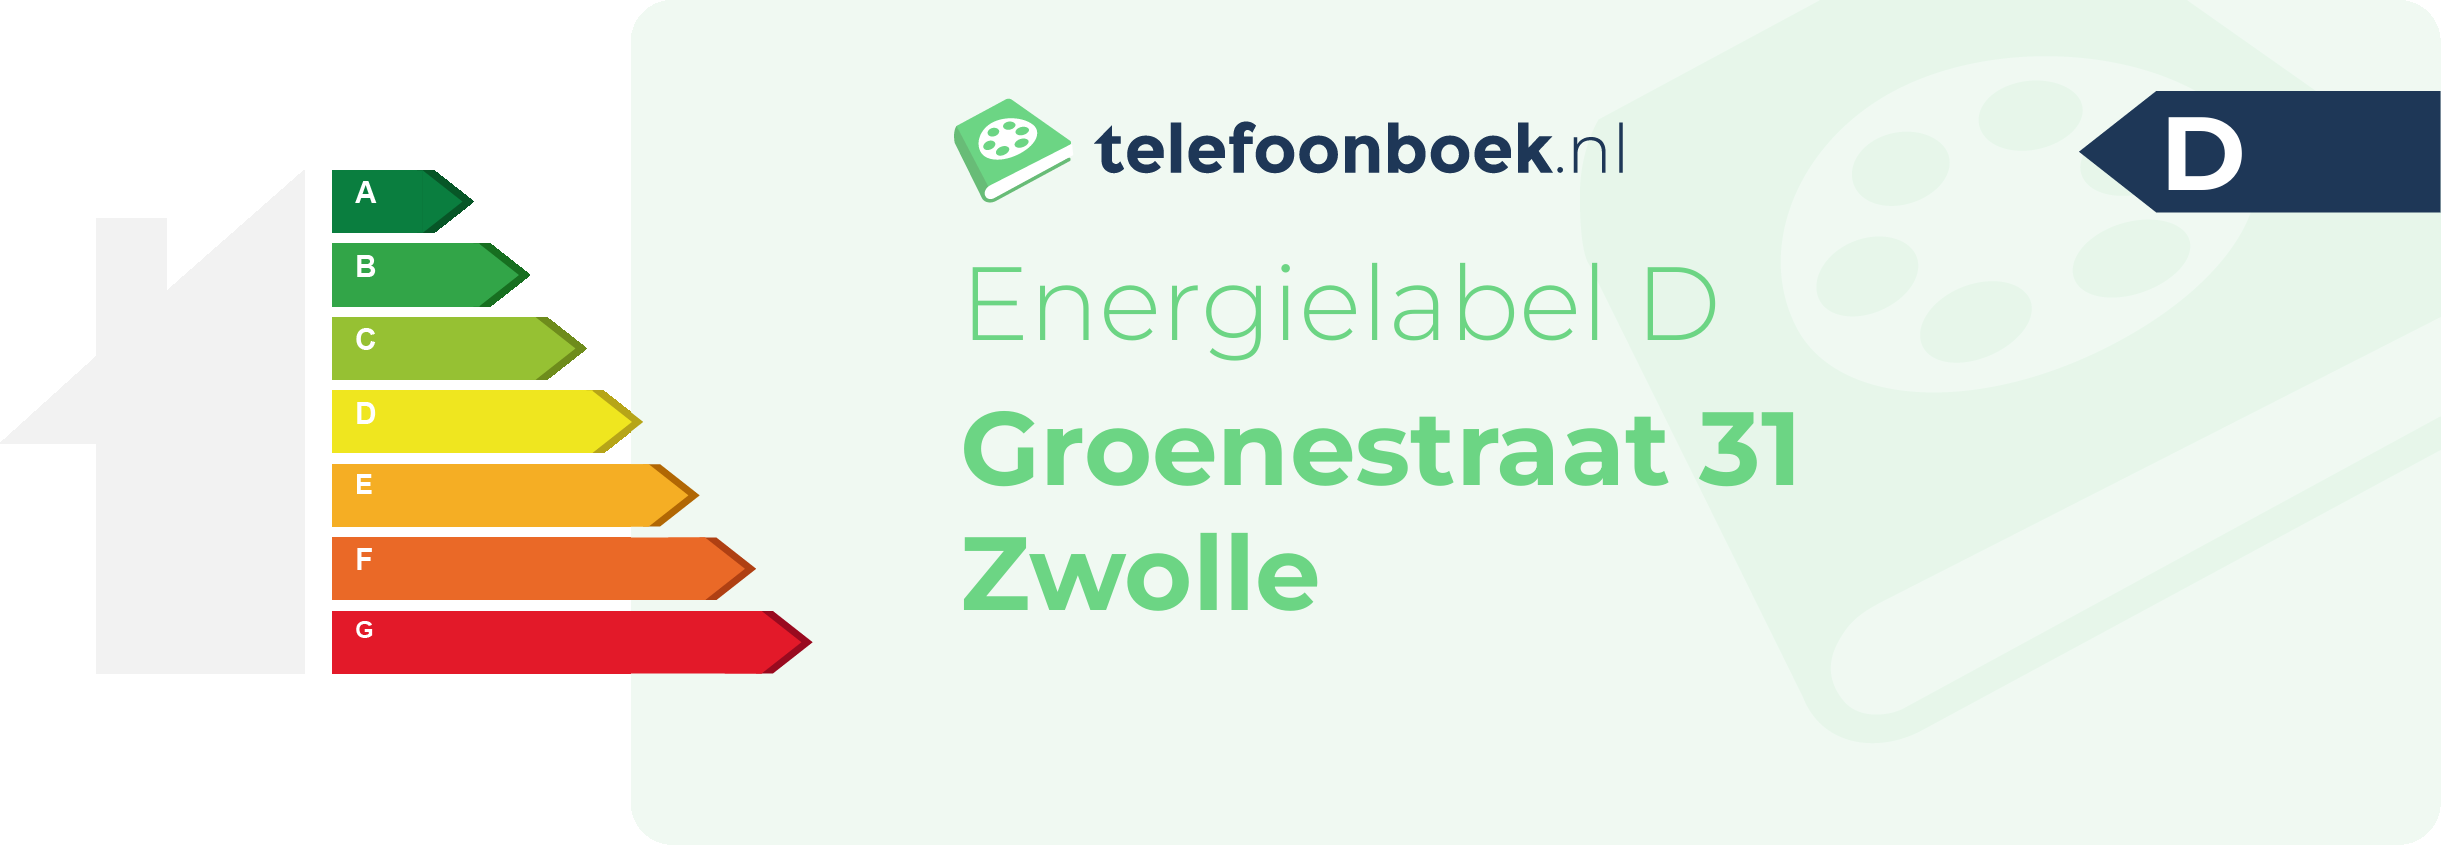 Energielabel Groenestraat 31 Zwolle